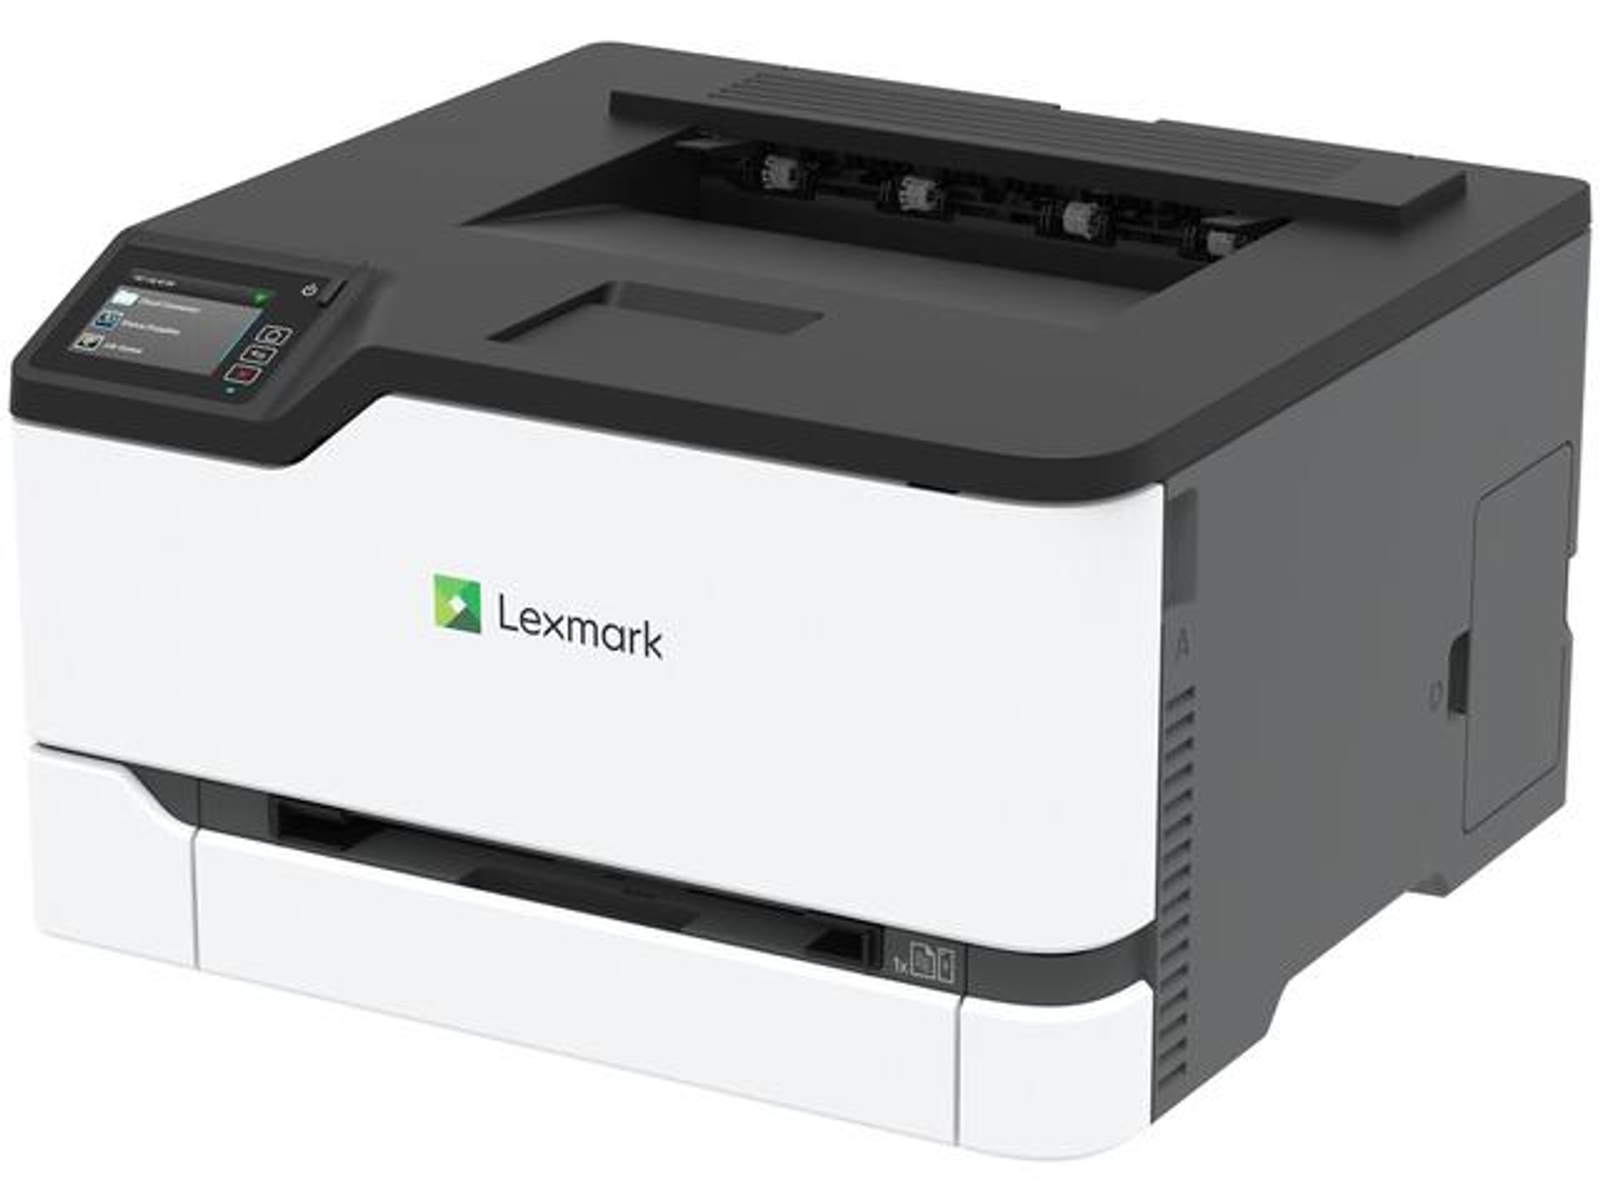 LEXMARK 13449112 Laser Multifunktionsdrucker WLAN Netzwerkfähig